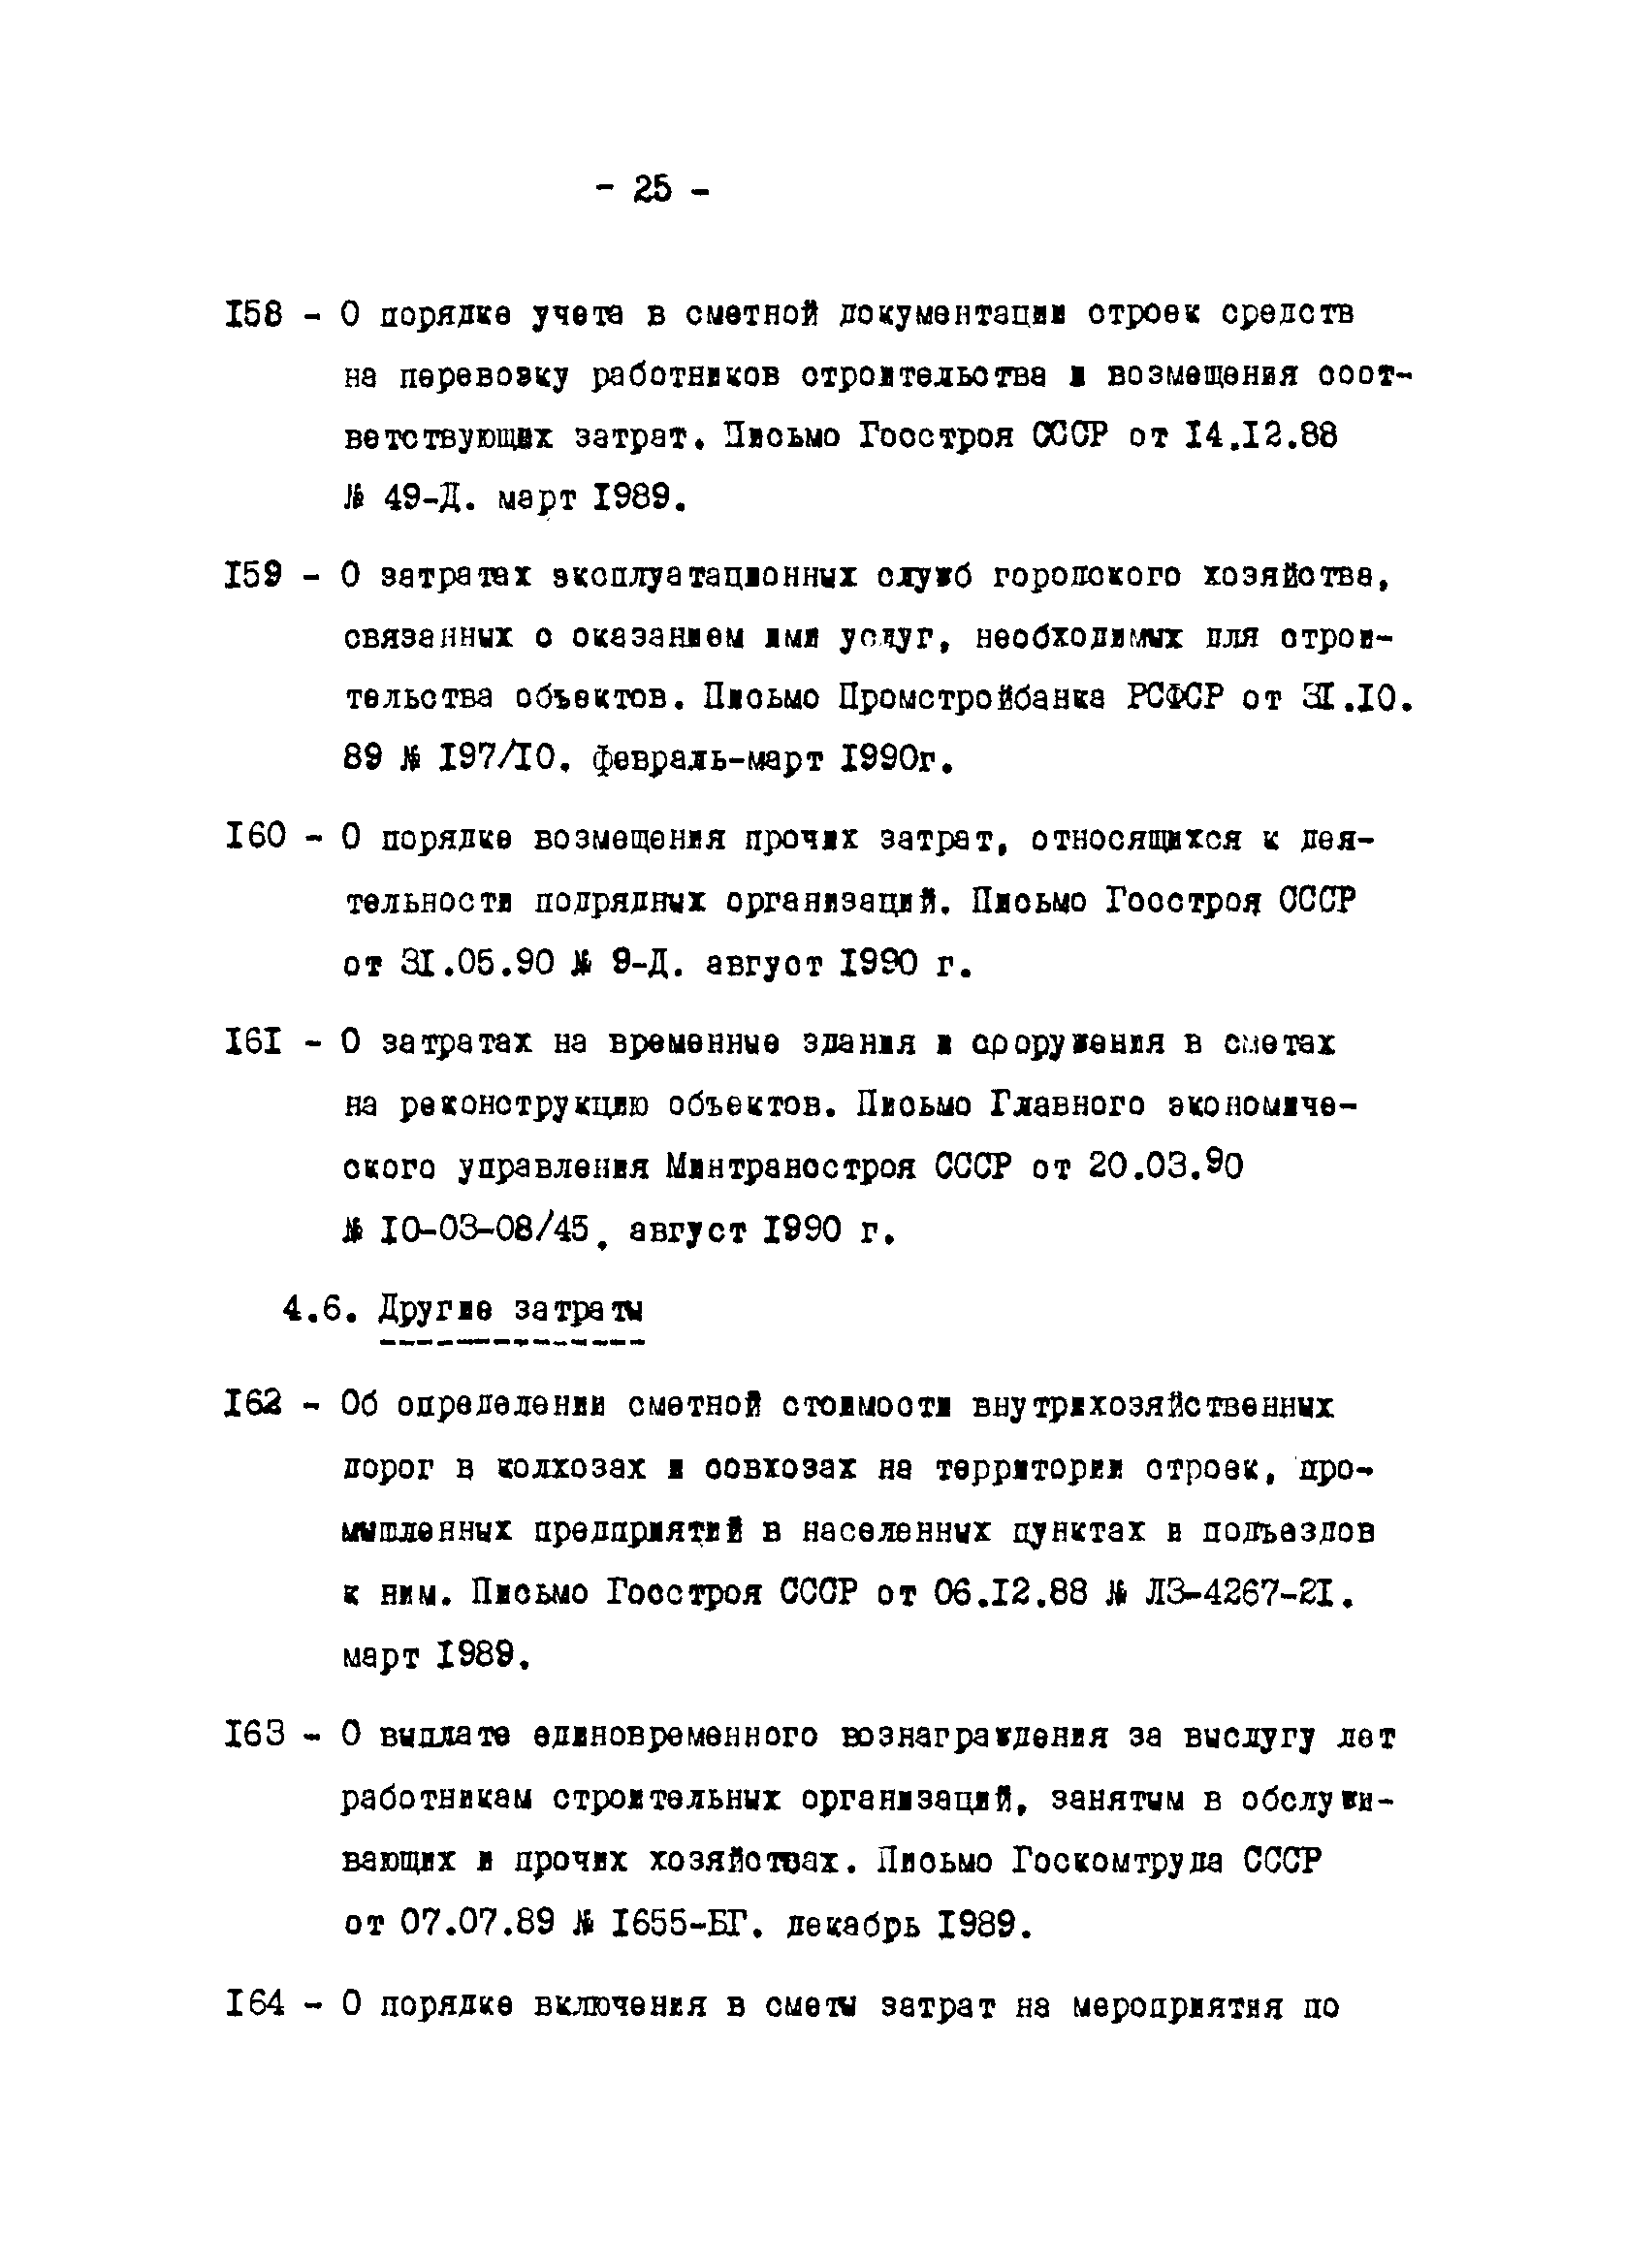 Методические указания 1-91